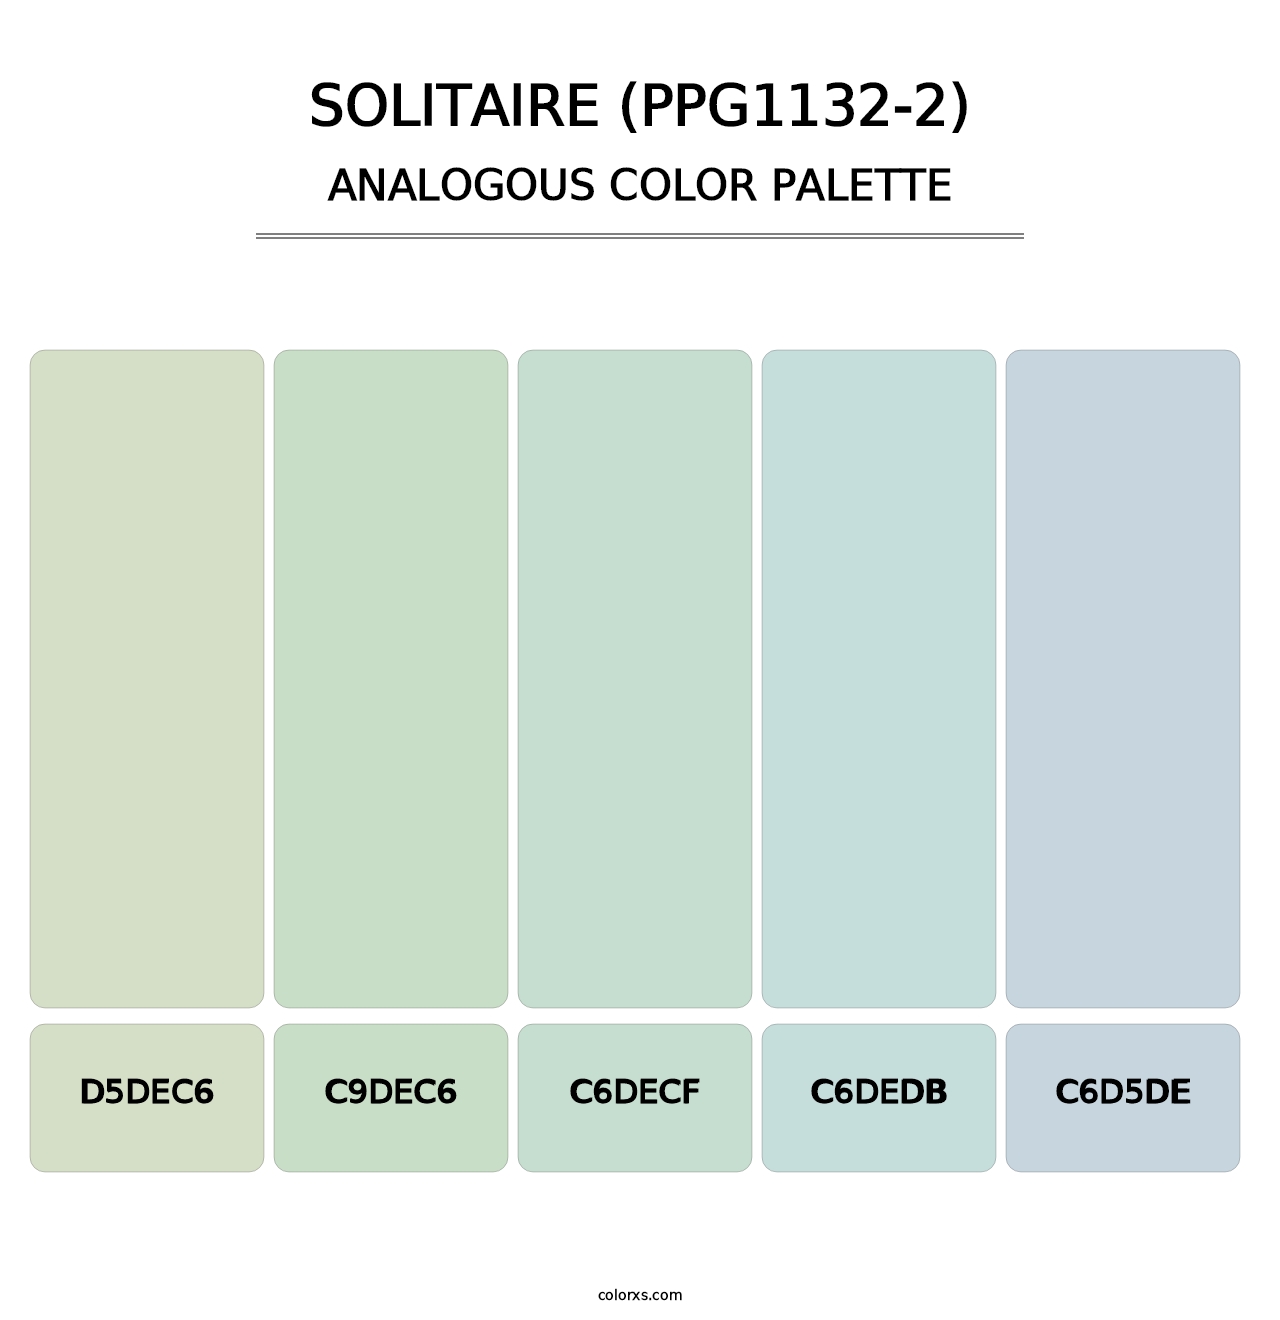 Solitaire (PPG1132-2) - Analogous Color Palette